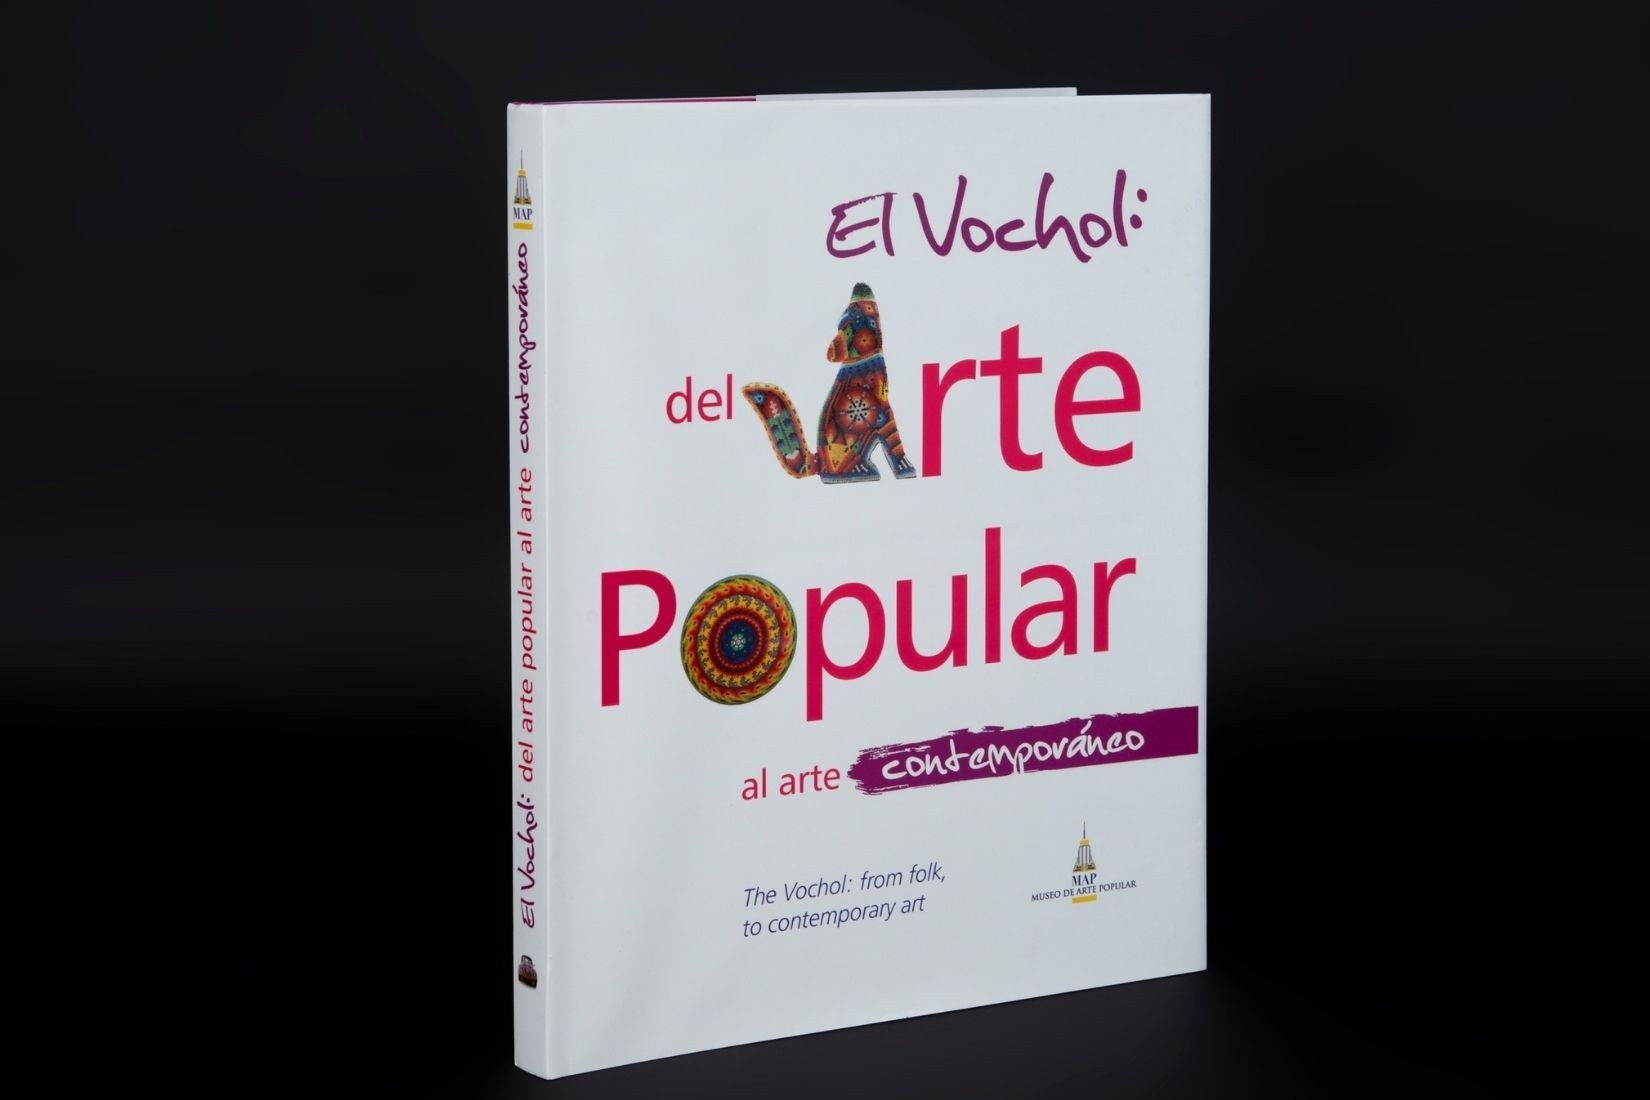 Portada de libro El Vochol: del Arte Popular al arte contemporáneo. Editorial Coloristas y Asociados. Noviembre 2011. (Foto: Jasso).